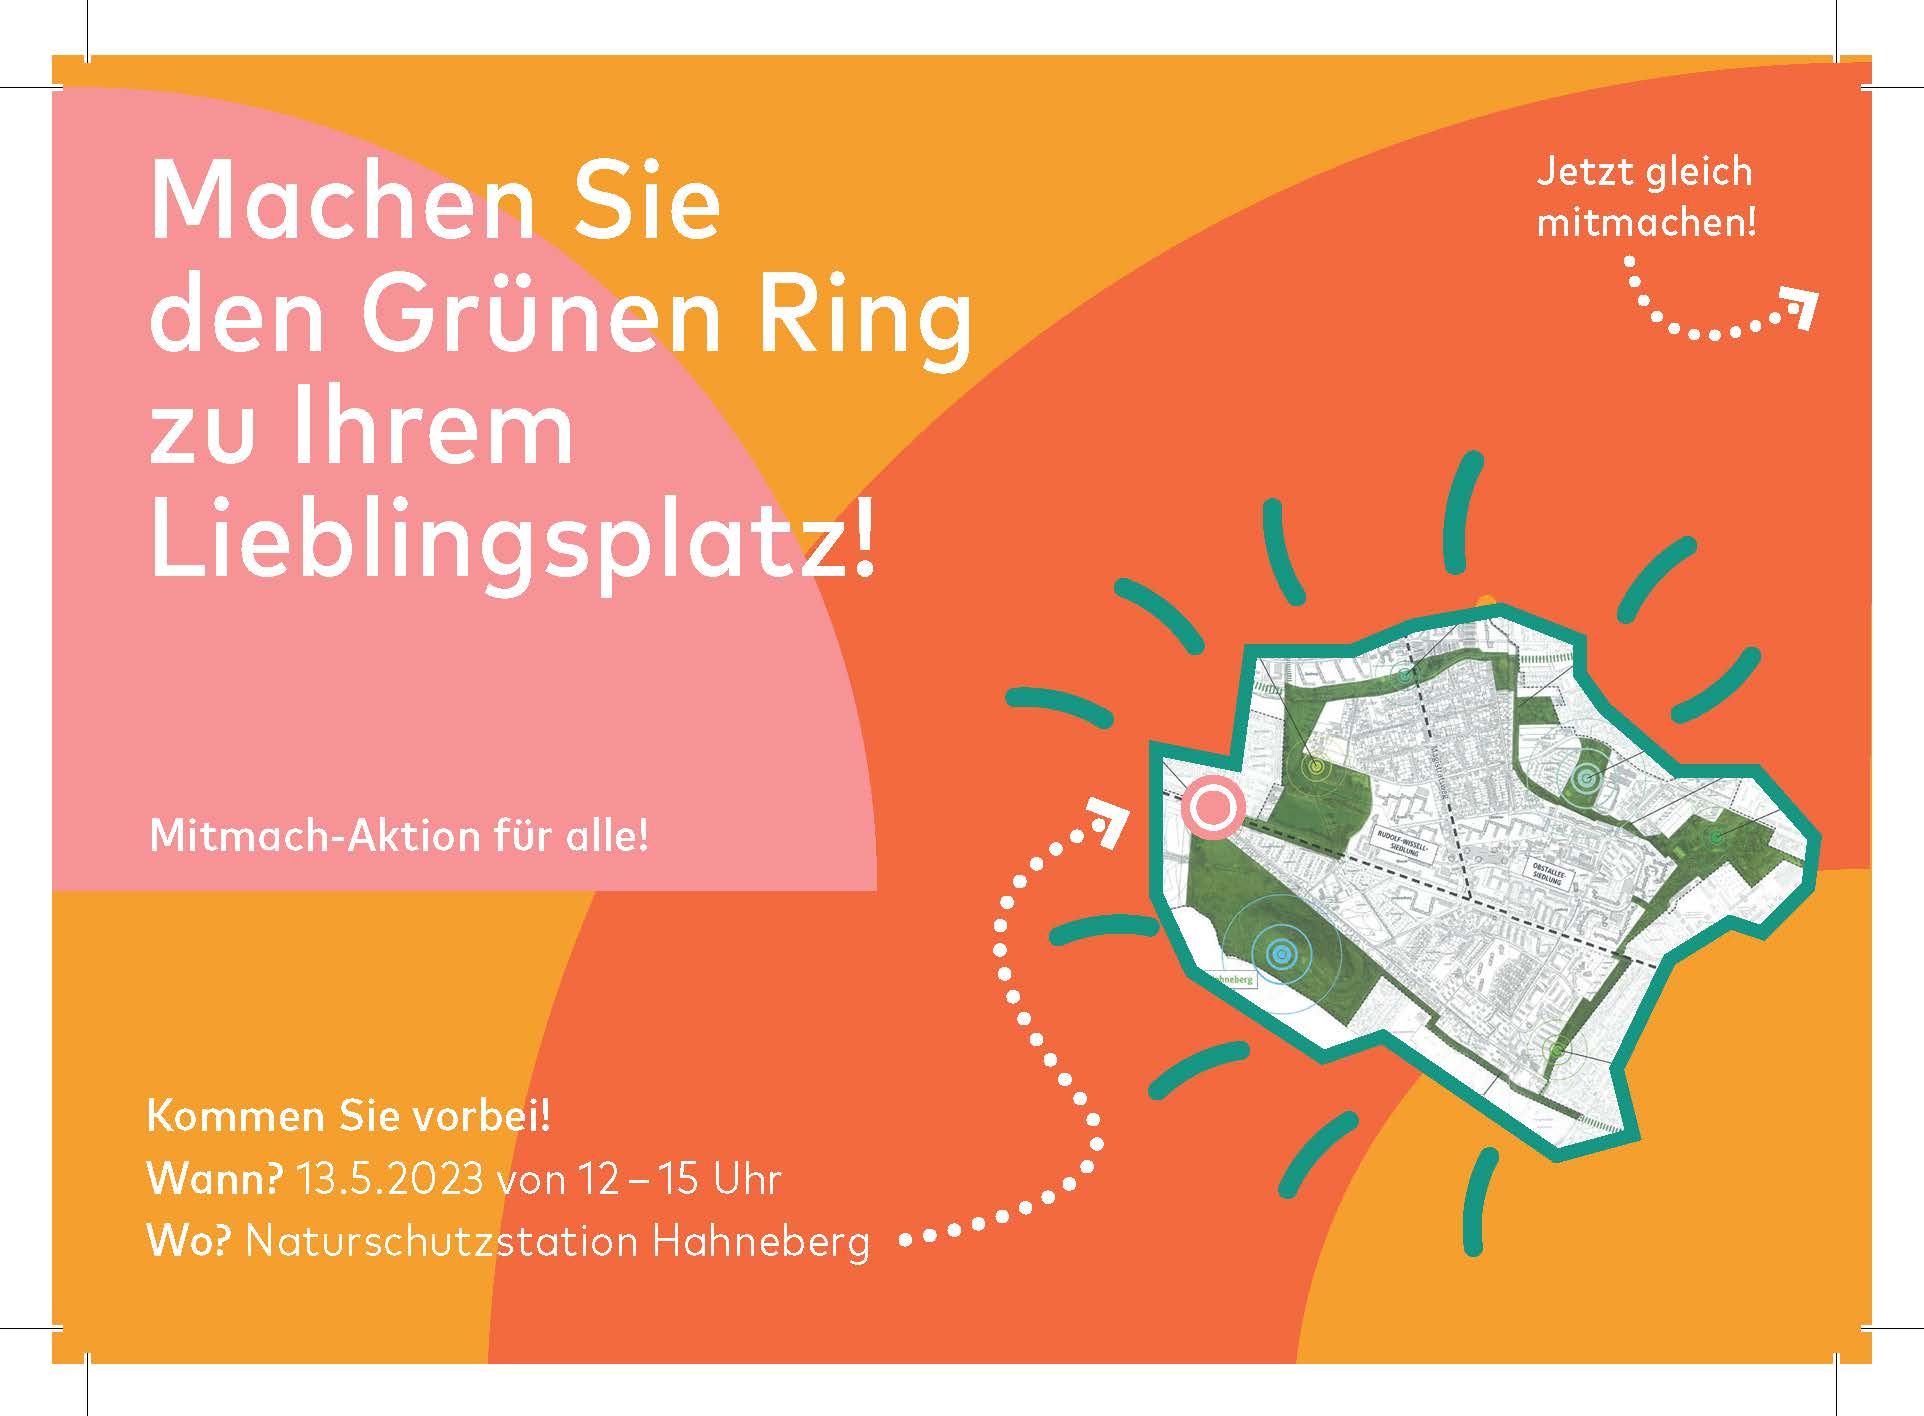 Grüner Ring Spandau: Beteiligung mit Postkartenaktion und Mitmach-Werkstatt